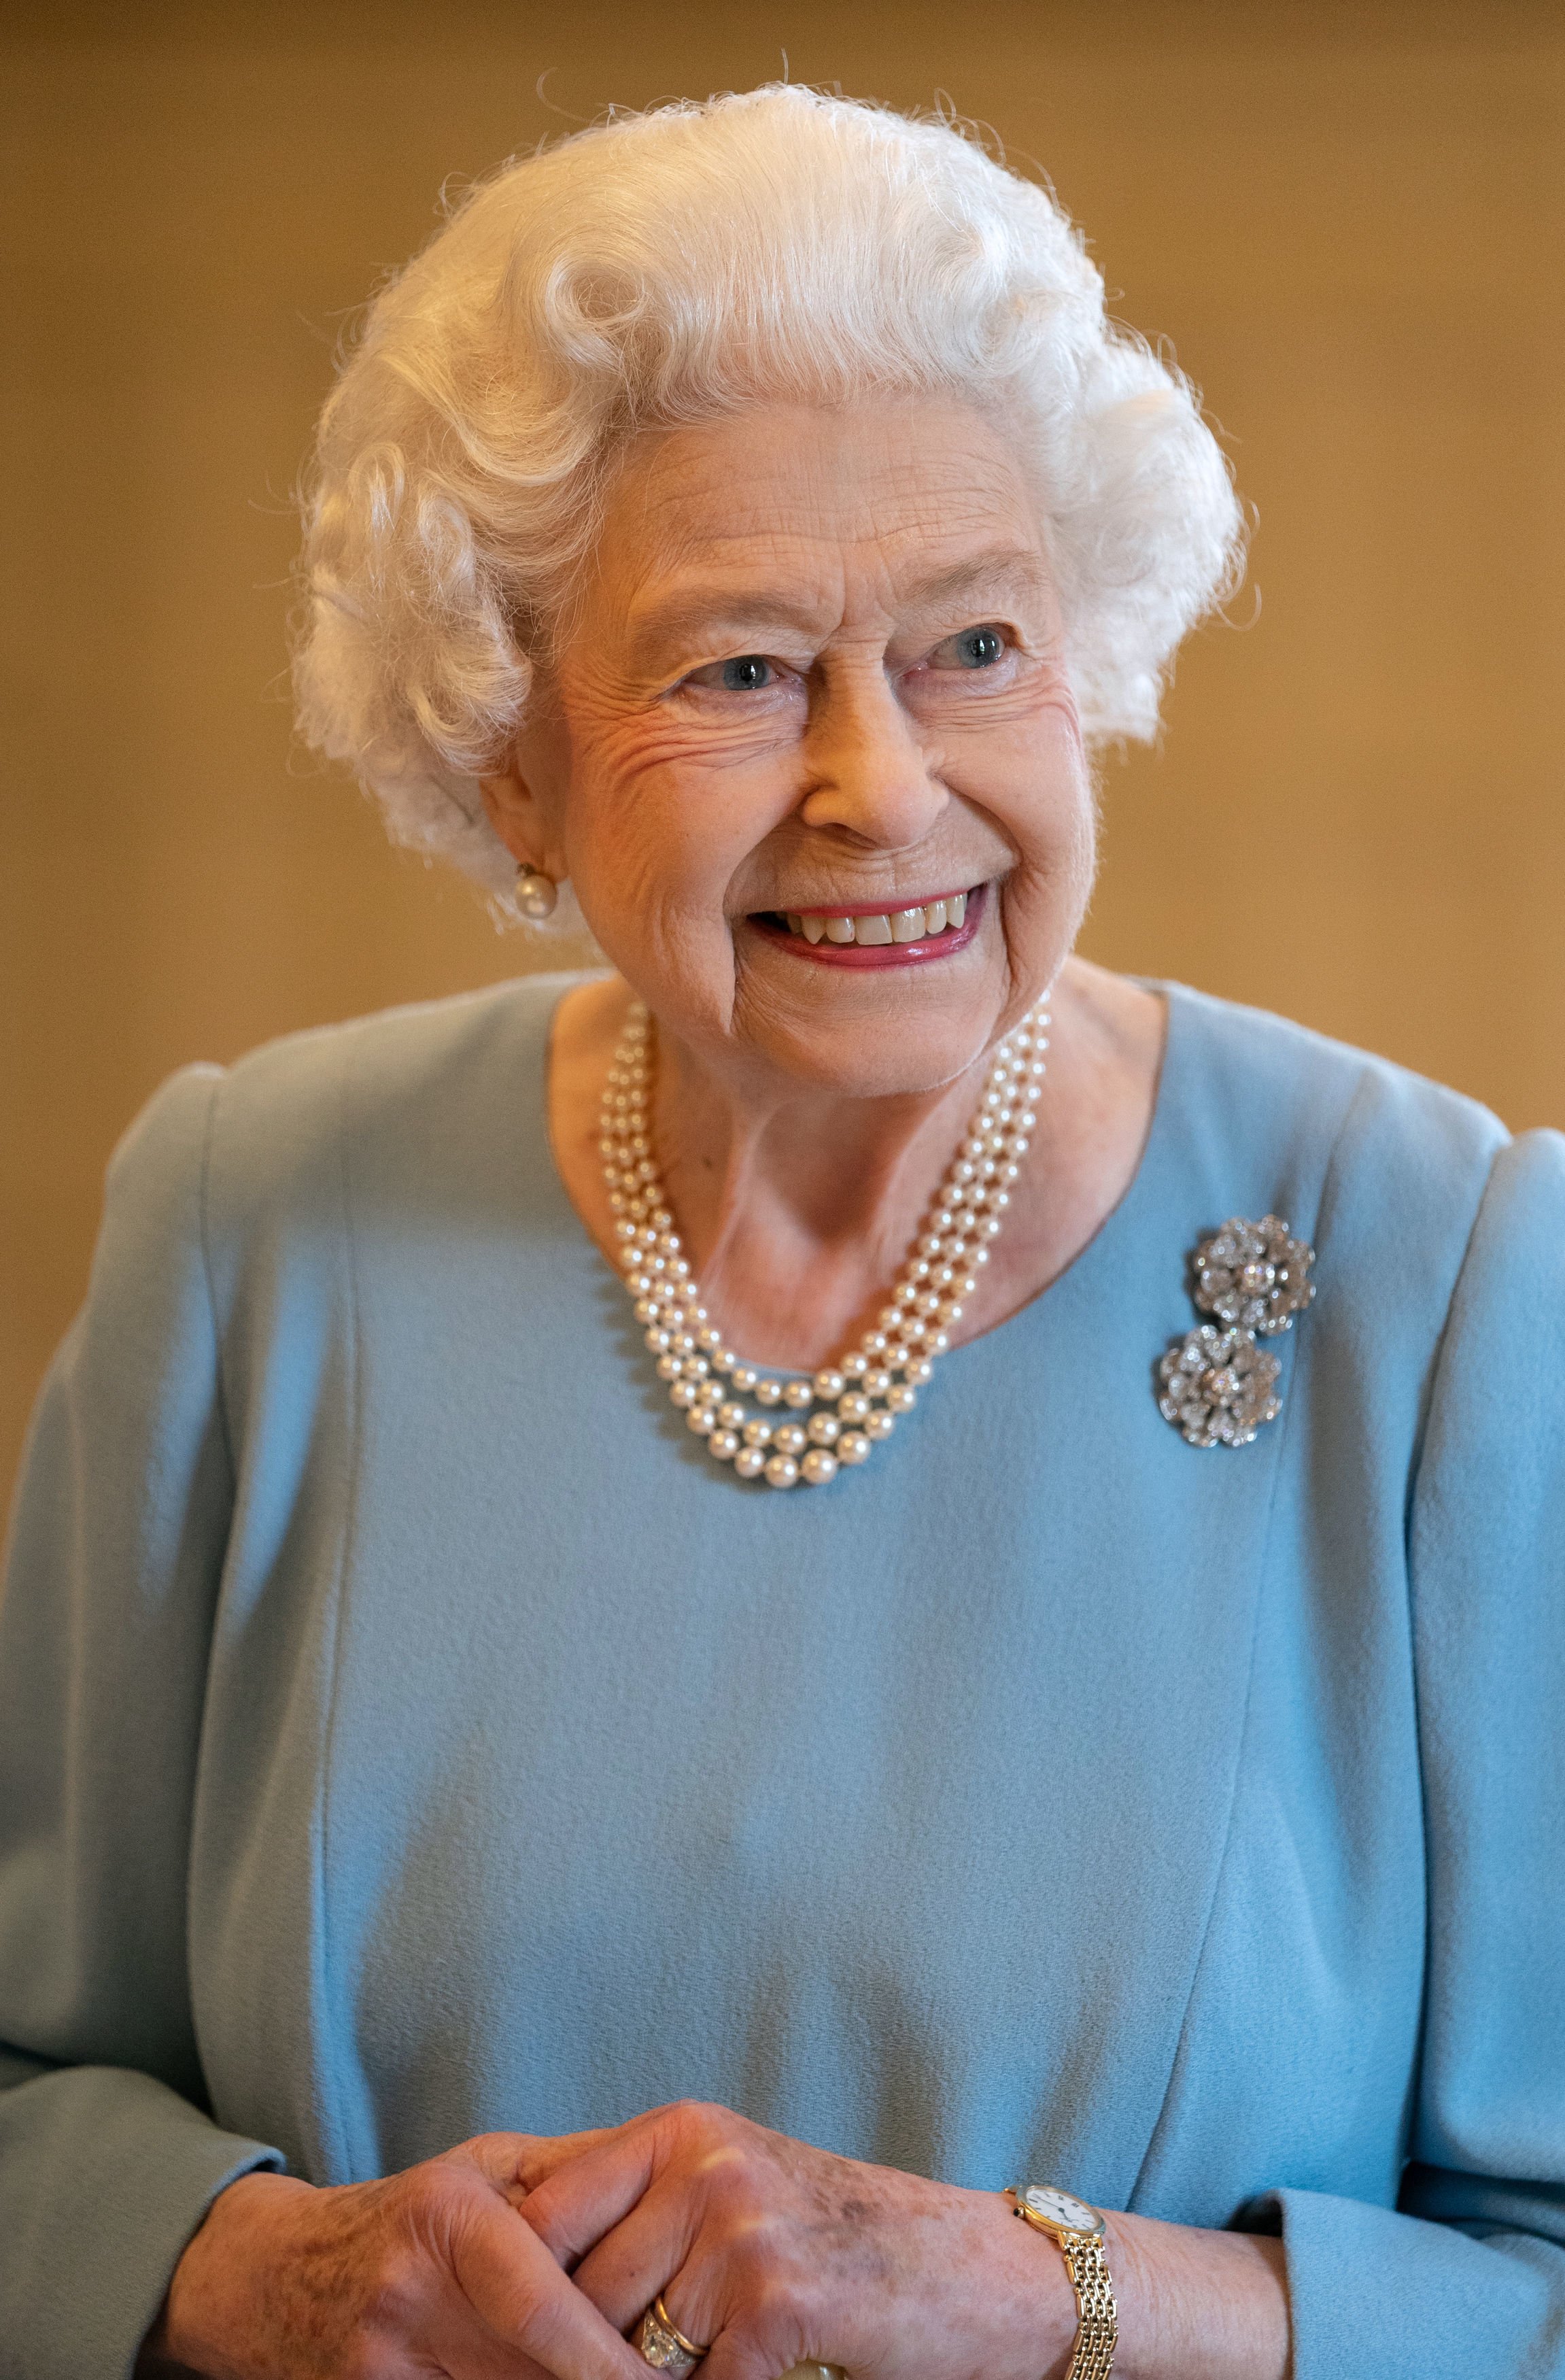 La reine Elizabeth II est photographiée rayonnante lors d'une réception dans la salle de bal de Sandringham House le 5 février 2022 à King's Lynn, en Angleterre | Source : Getty Images